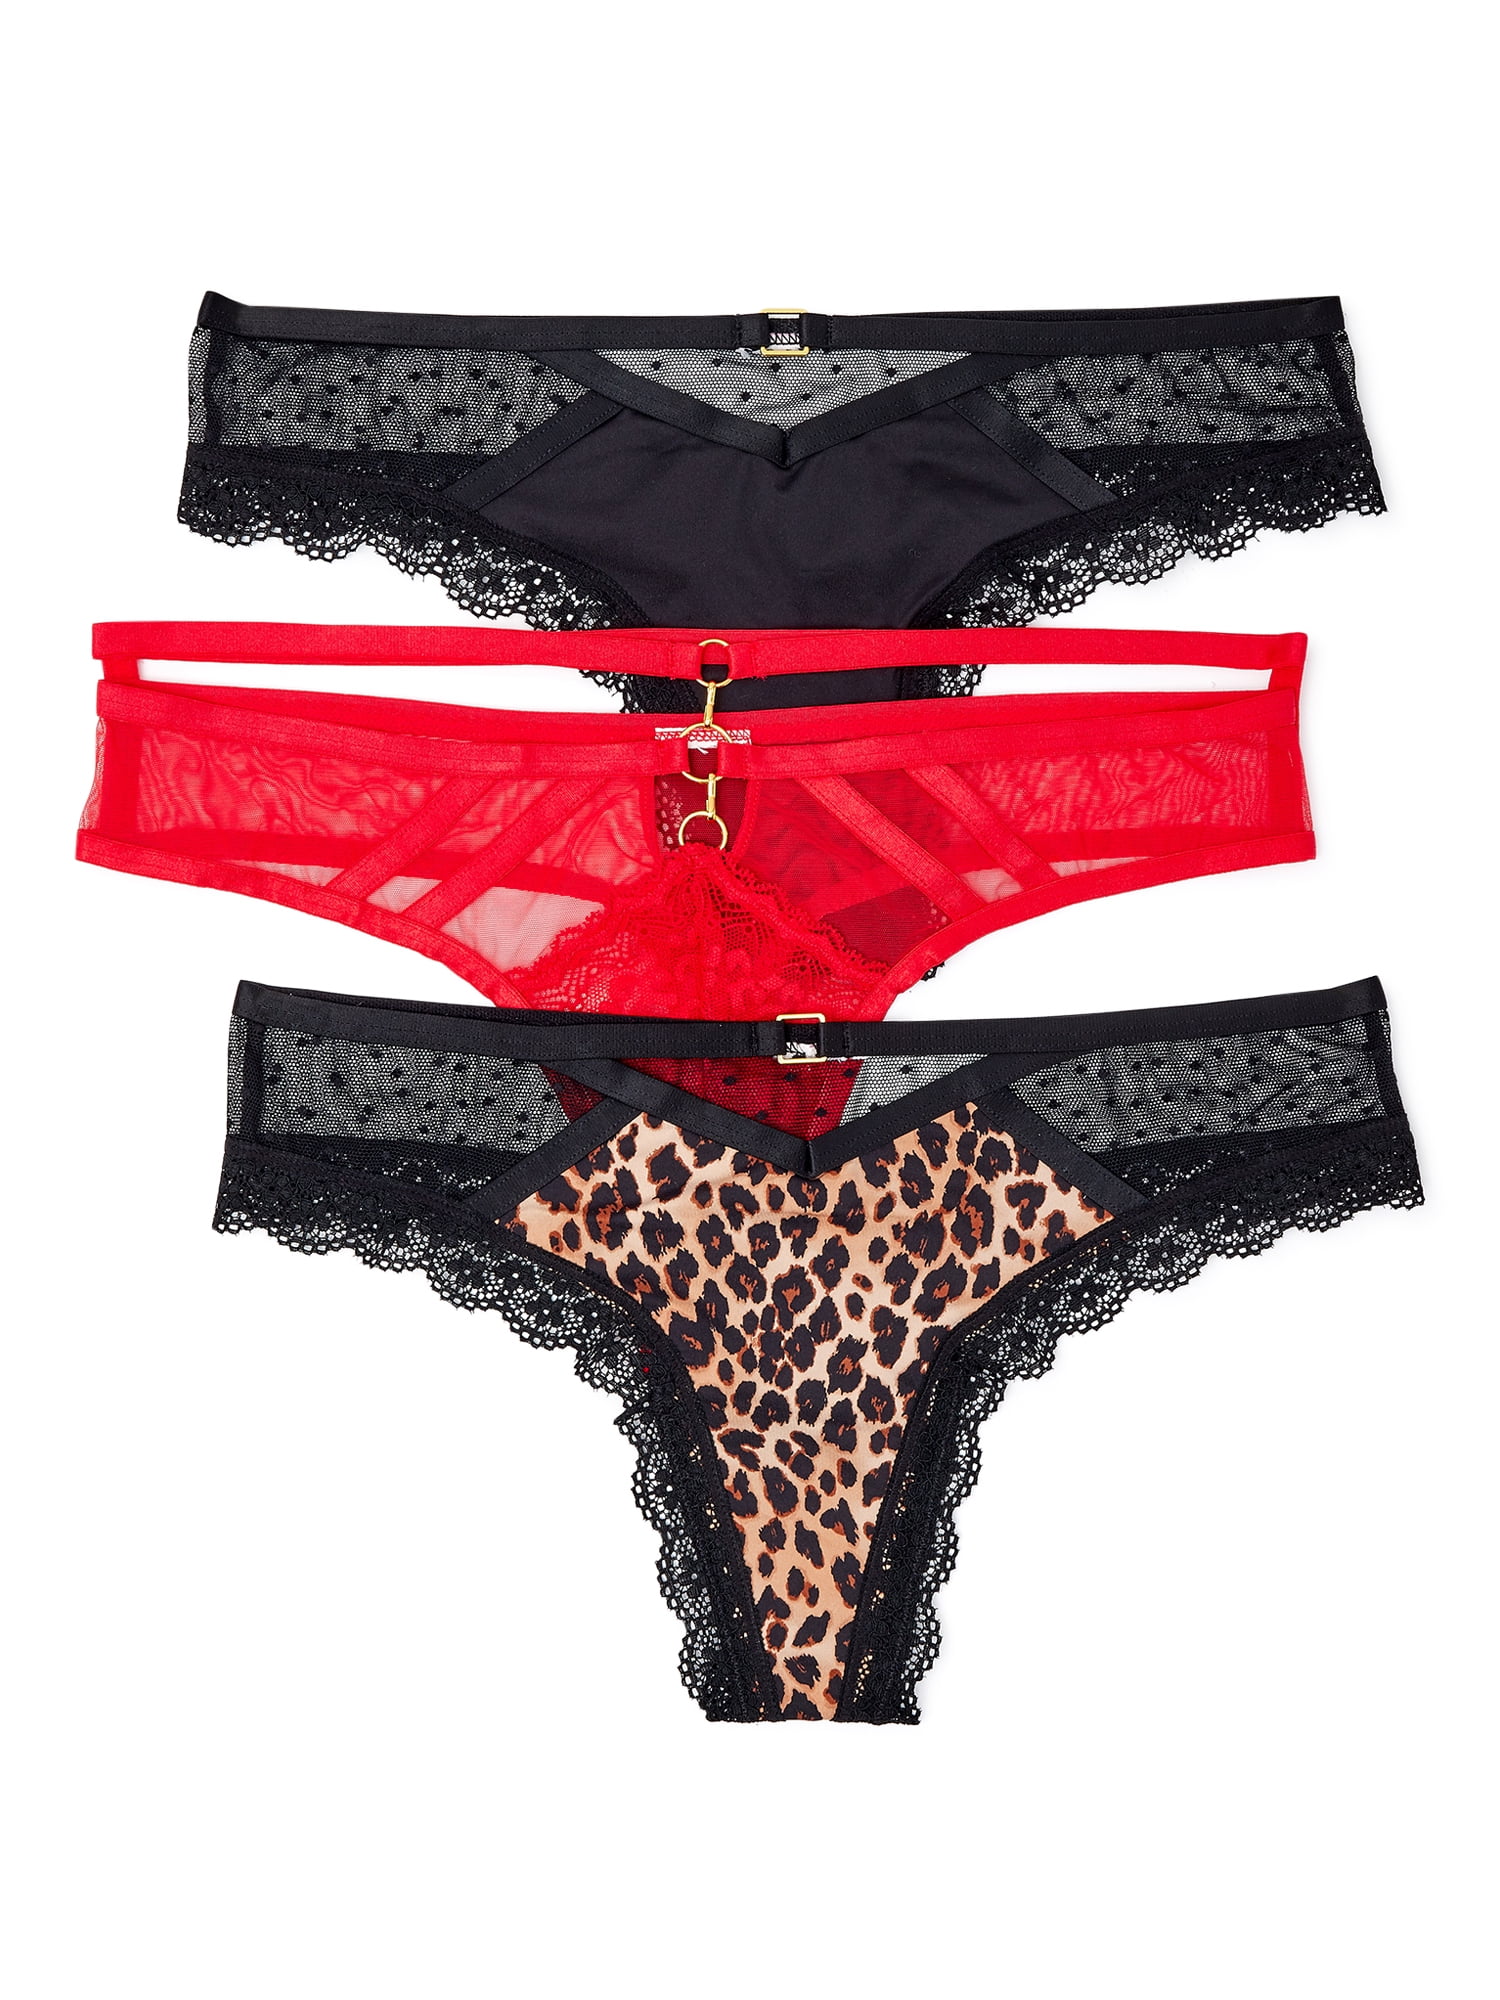 Details about   Secret Treasures Stretch Lace Thong Panties XXL/2XG 9 NWT Black Beige Mauve 